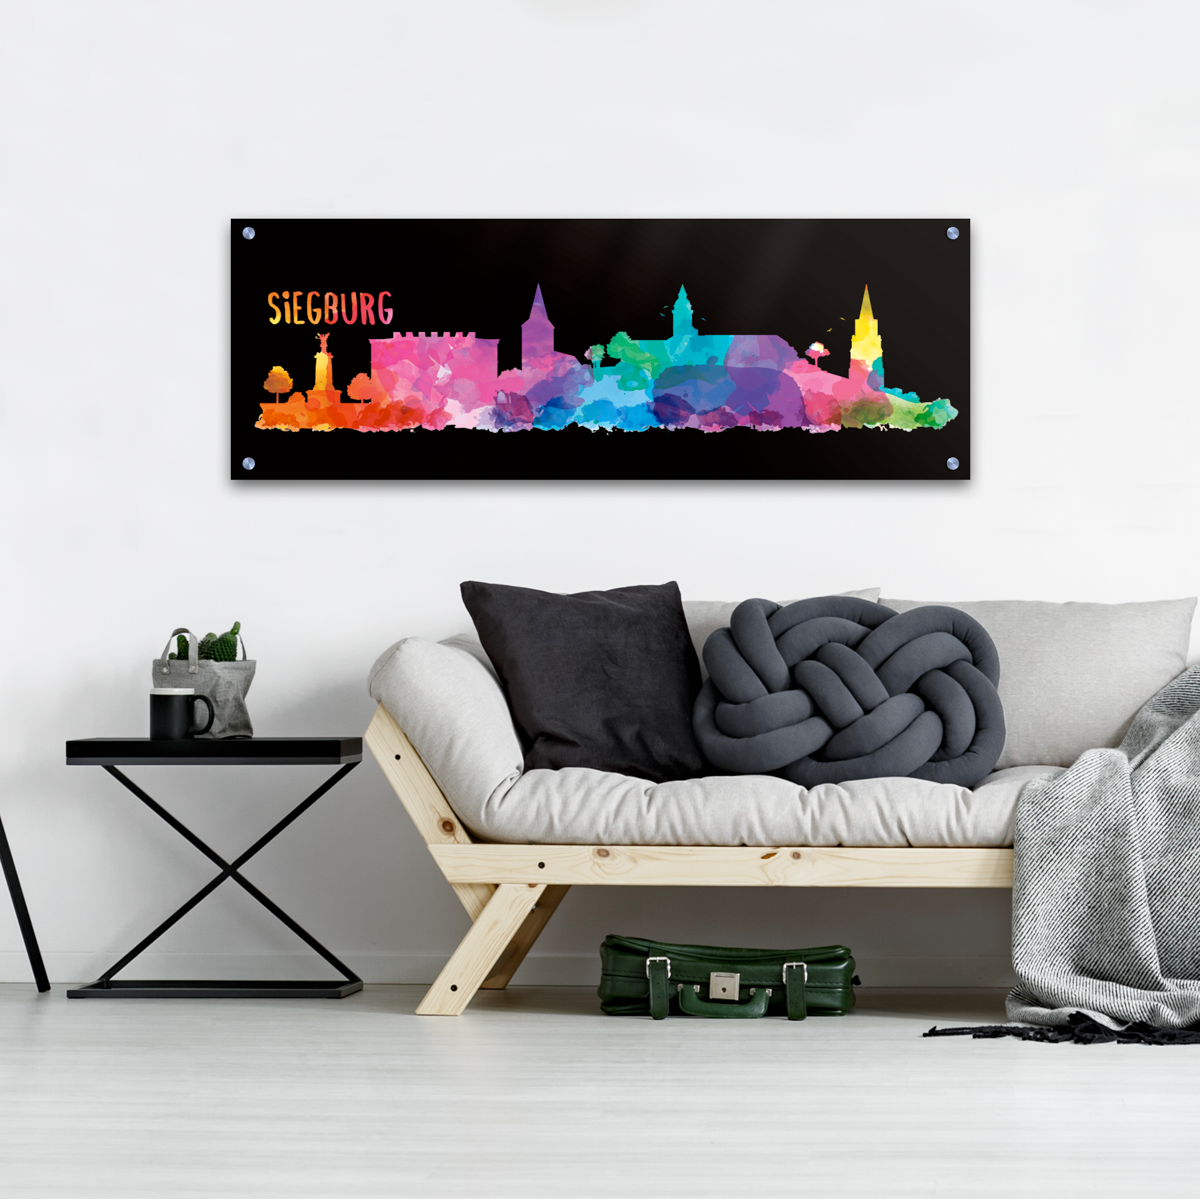 Skyline Siegburg Acrylglas Wandbild -  Aquarell schwarz                                                        